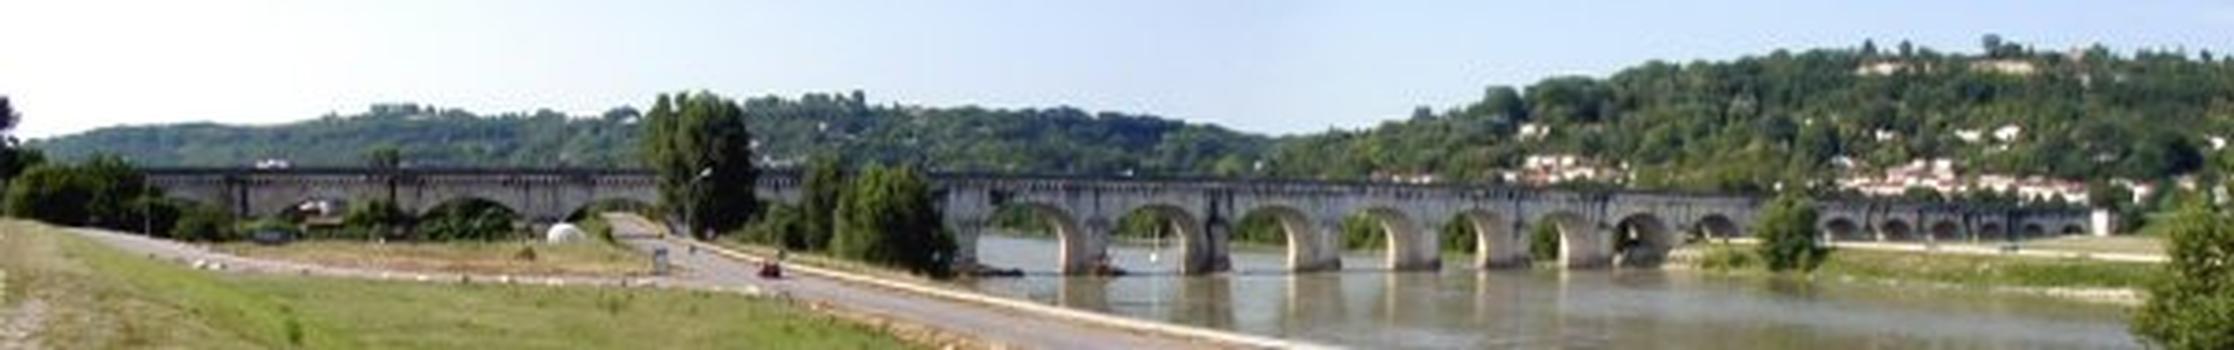 Pont-canal d'Agen.Ensemble